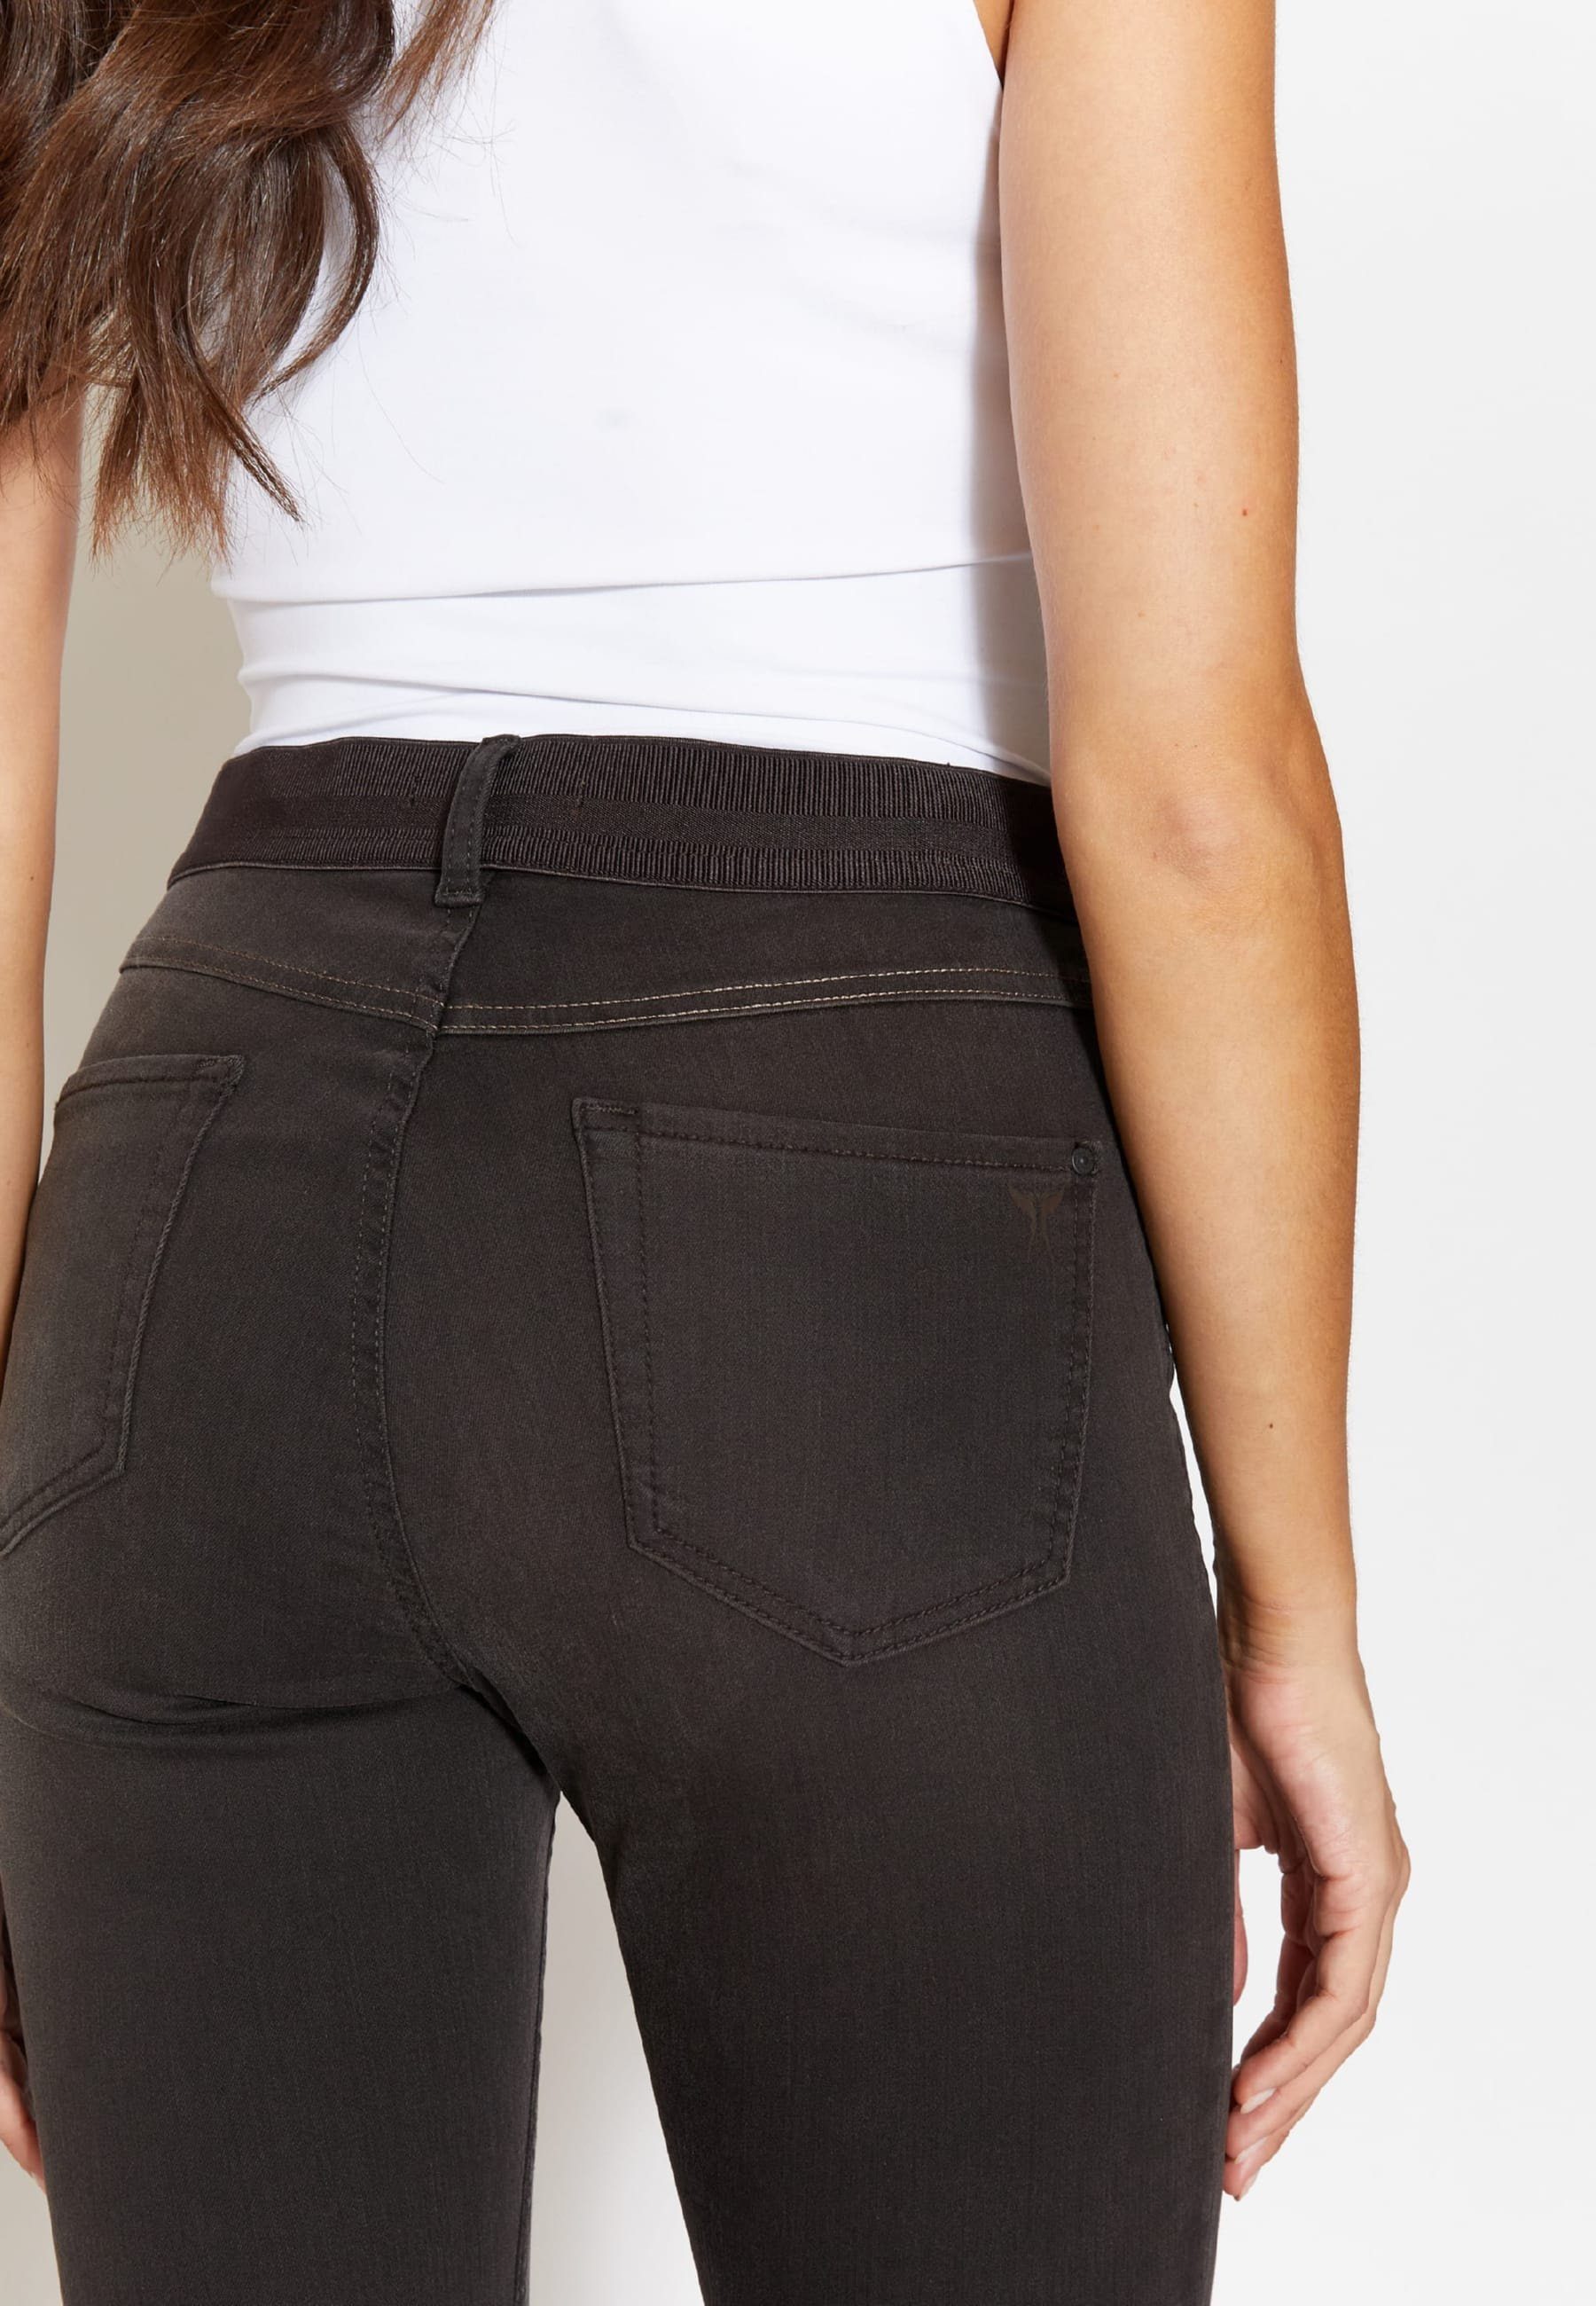 ANGELS Mit Slim-fit-Jeans Jeans mit Label-Applikationen Stretch-bund Size dunkelbraun One